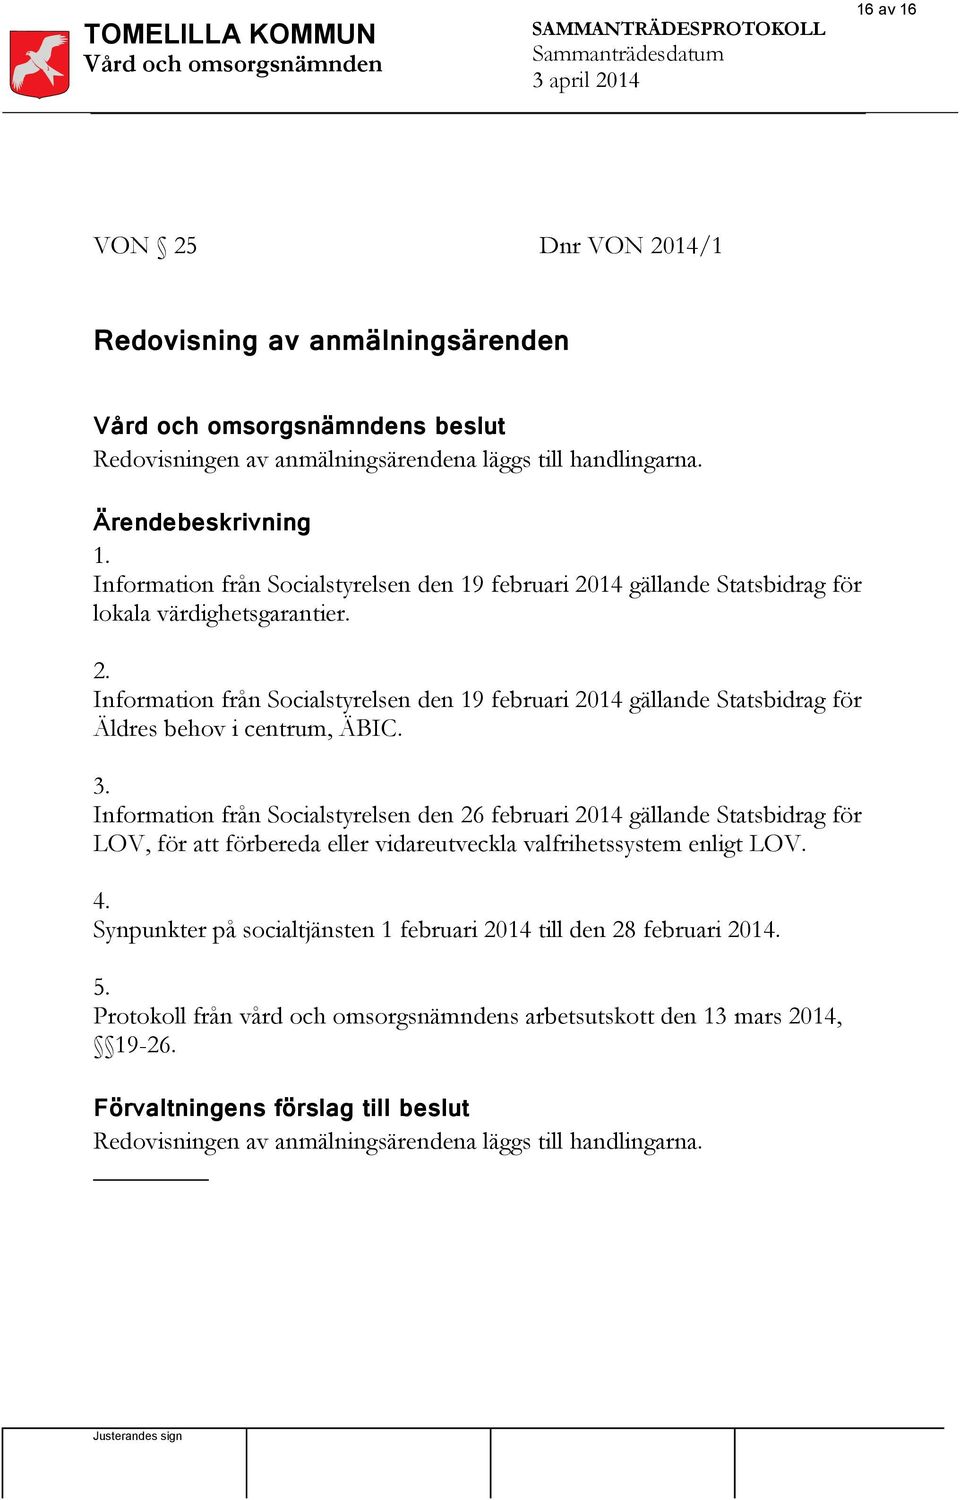 Information från Socialstyrelsen den 26 februari 2014 gällande Statsbidrag för LOV, för att förbereda eller vidareutveckla valfrihetssystem enligt LOV. 4.